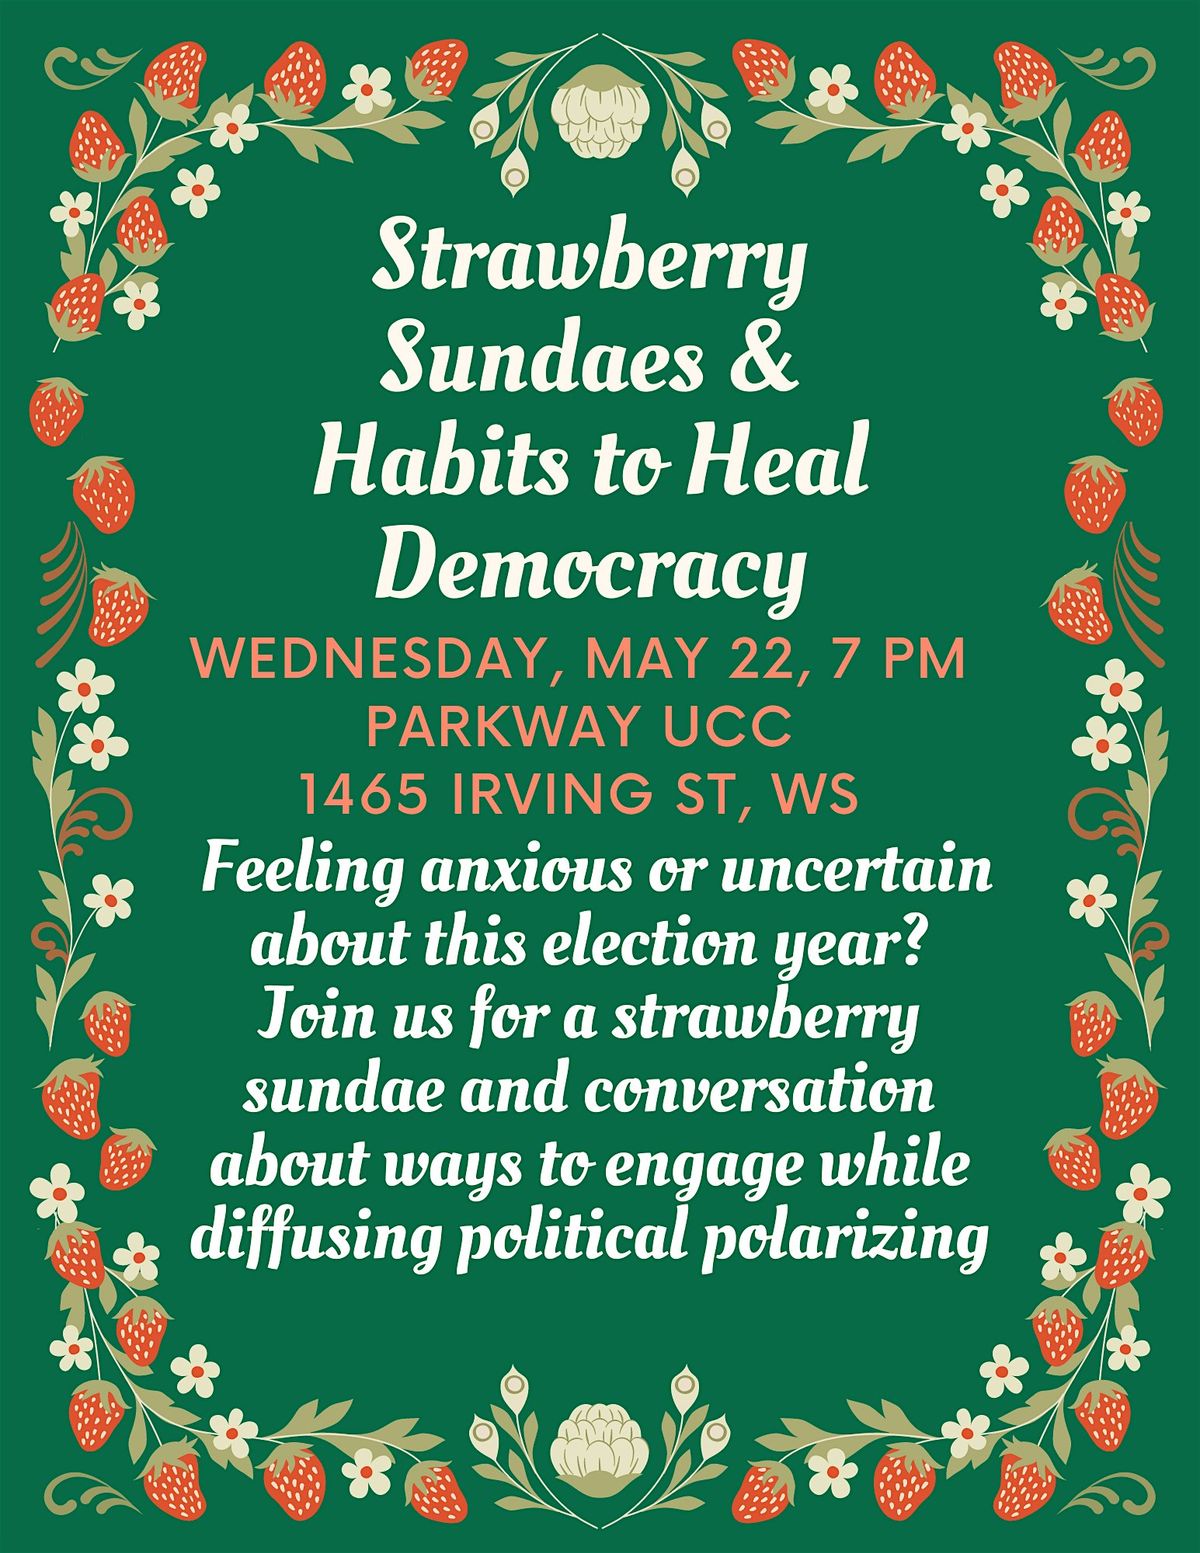 Strawberry Sundaes & Habits for Democracy